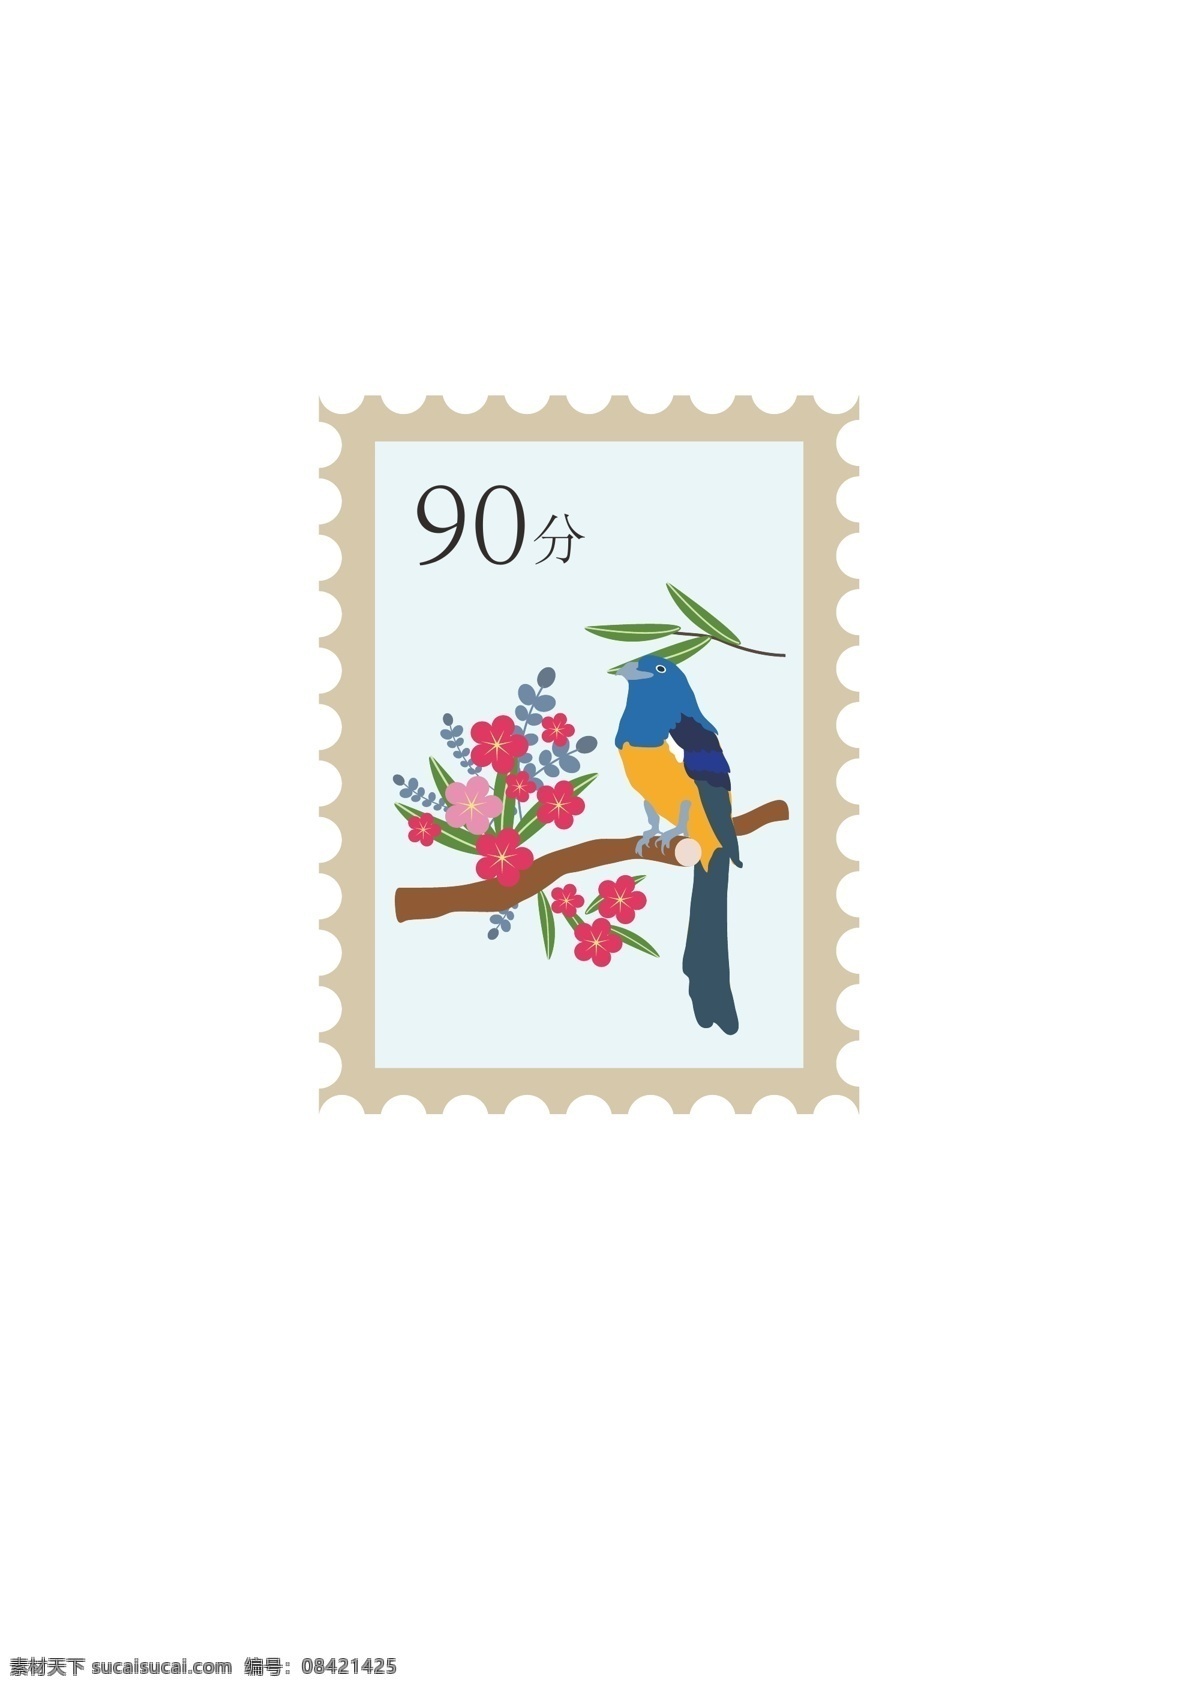 邮票绘制 邮票 插画 风格 绘制 小鸟 花朵 图标设计